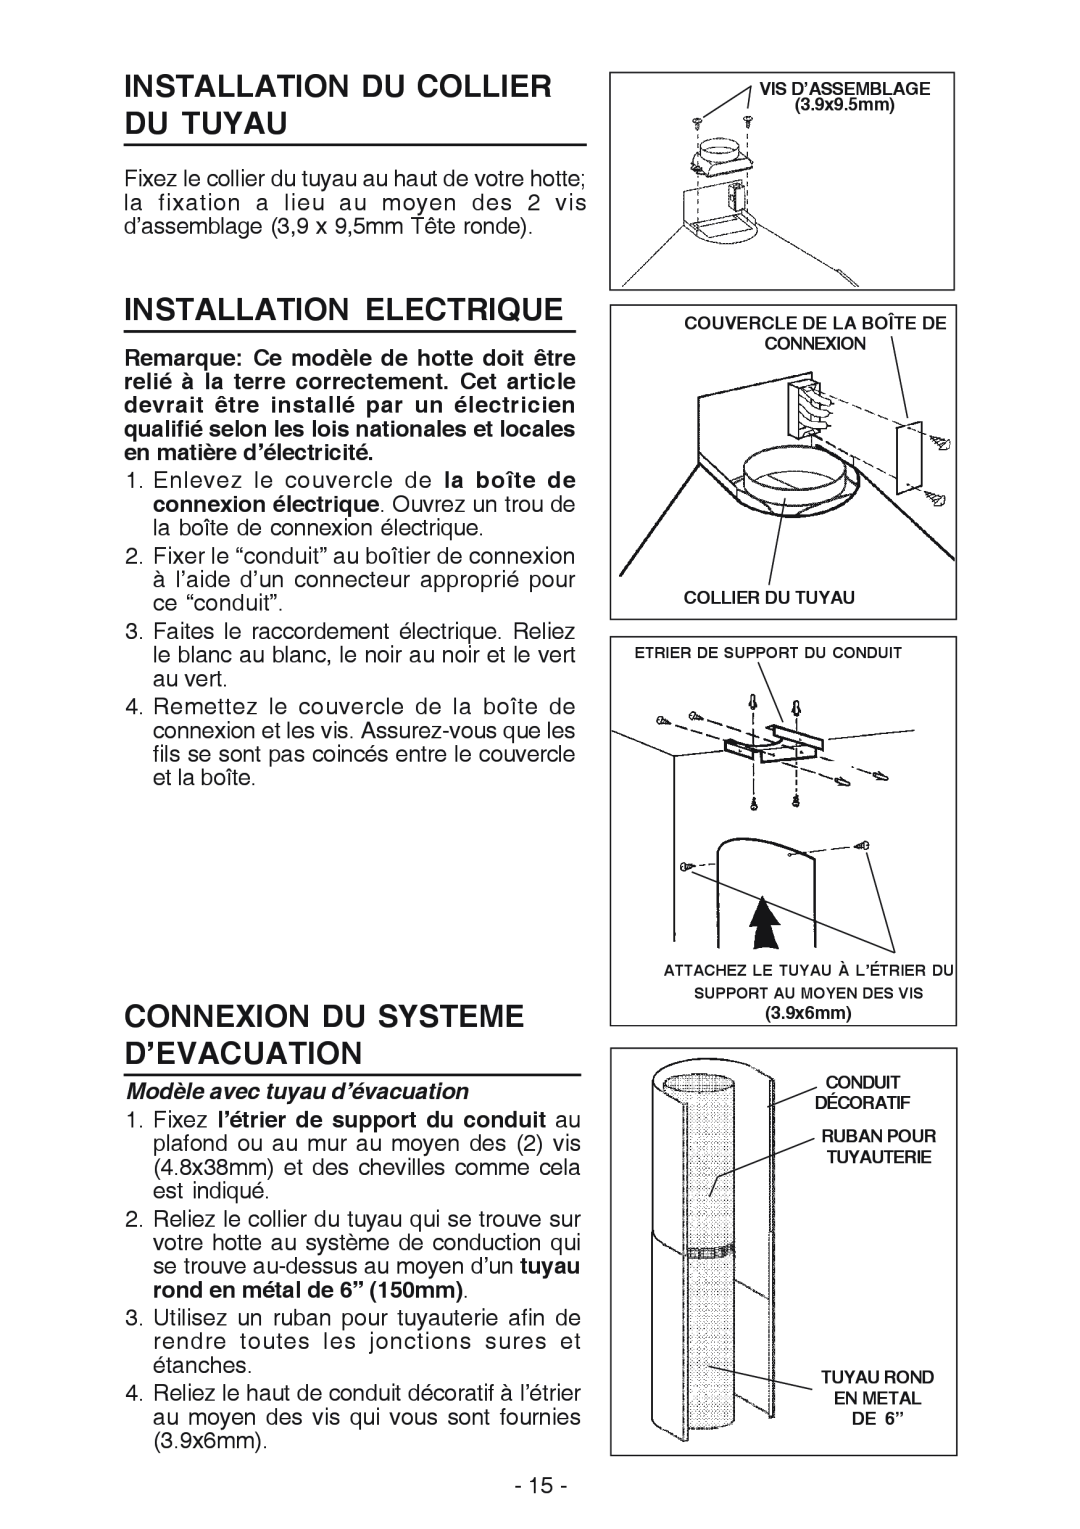 Best K15 manual Installation Du Collier Du Tuyau, Installation Electrique, Connexion Du Systeme D’Evacuation 